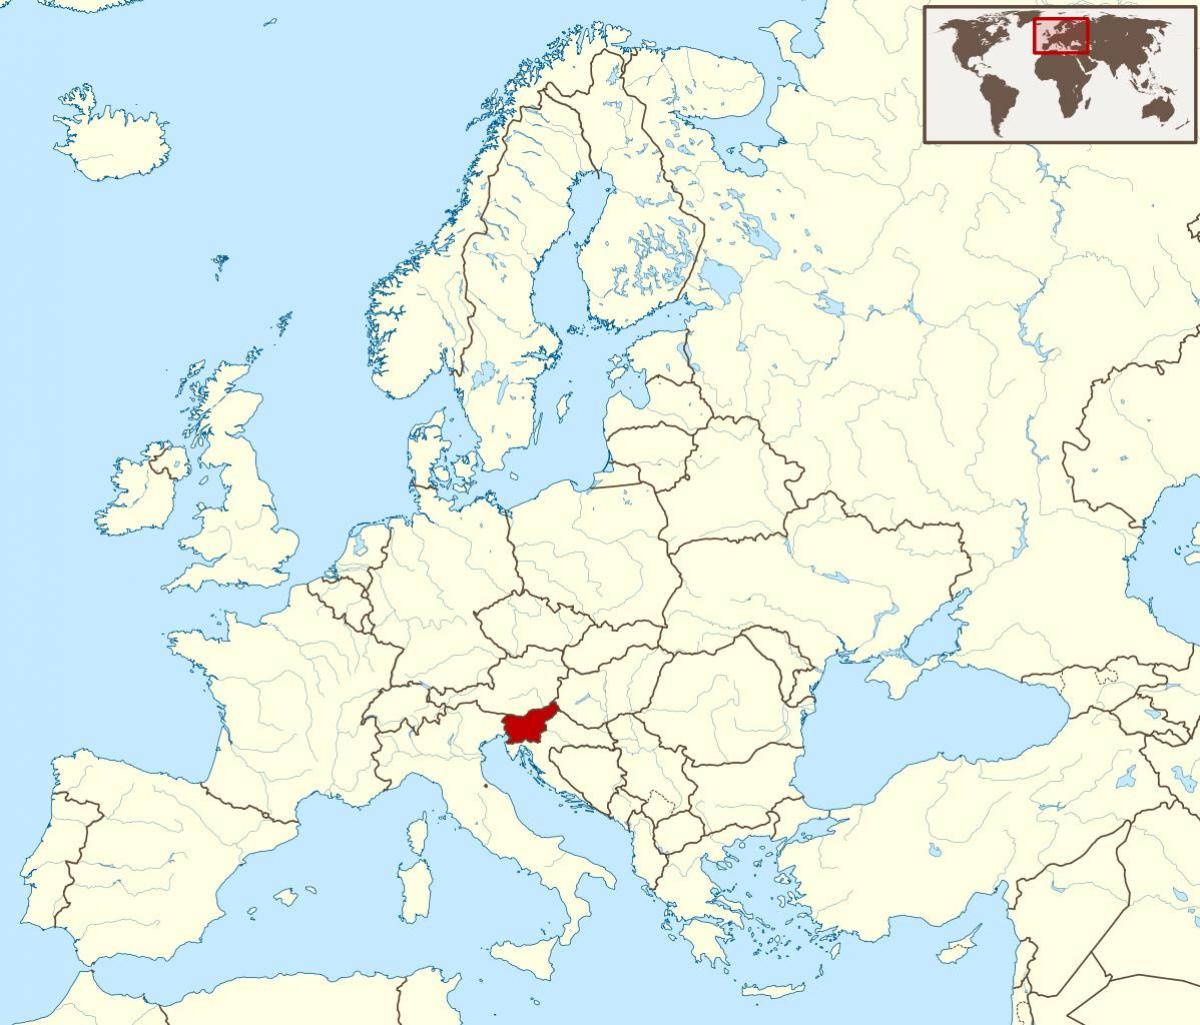 Eslovenia ubicación en el mapa del mundo